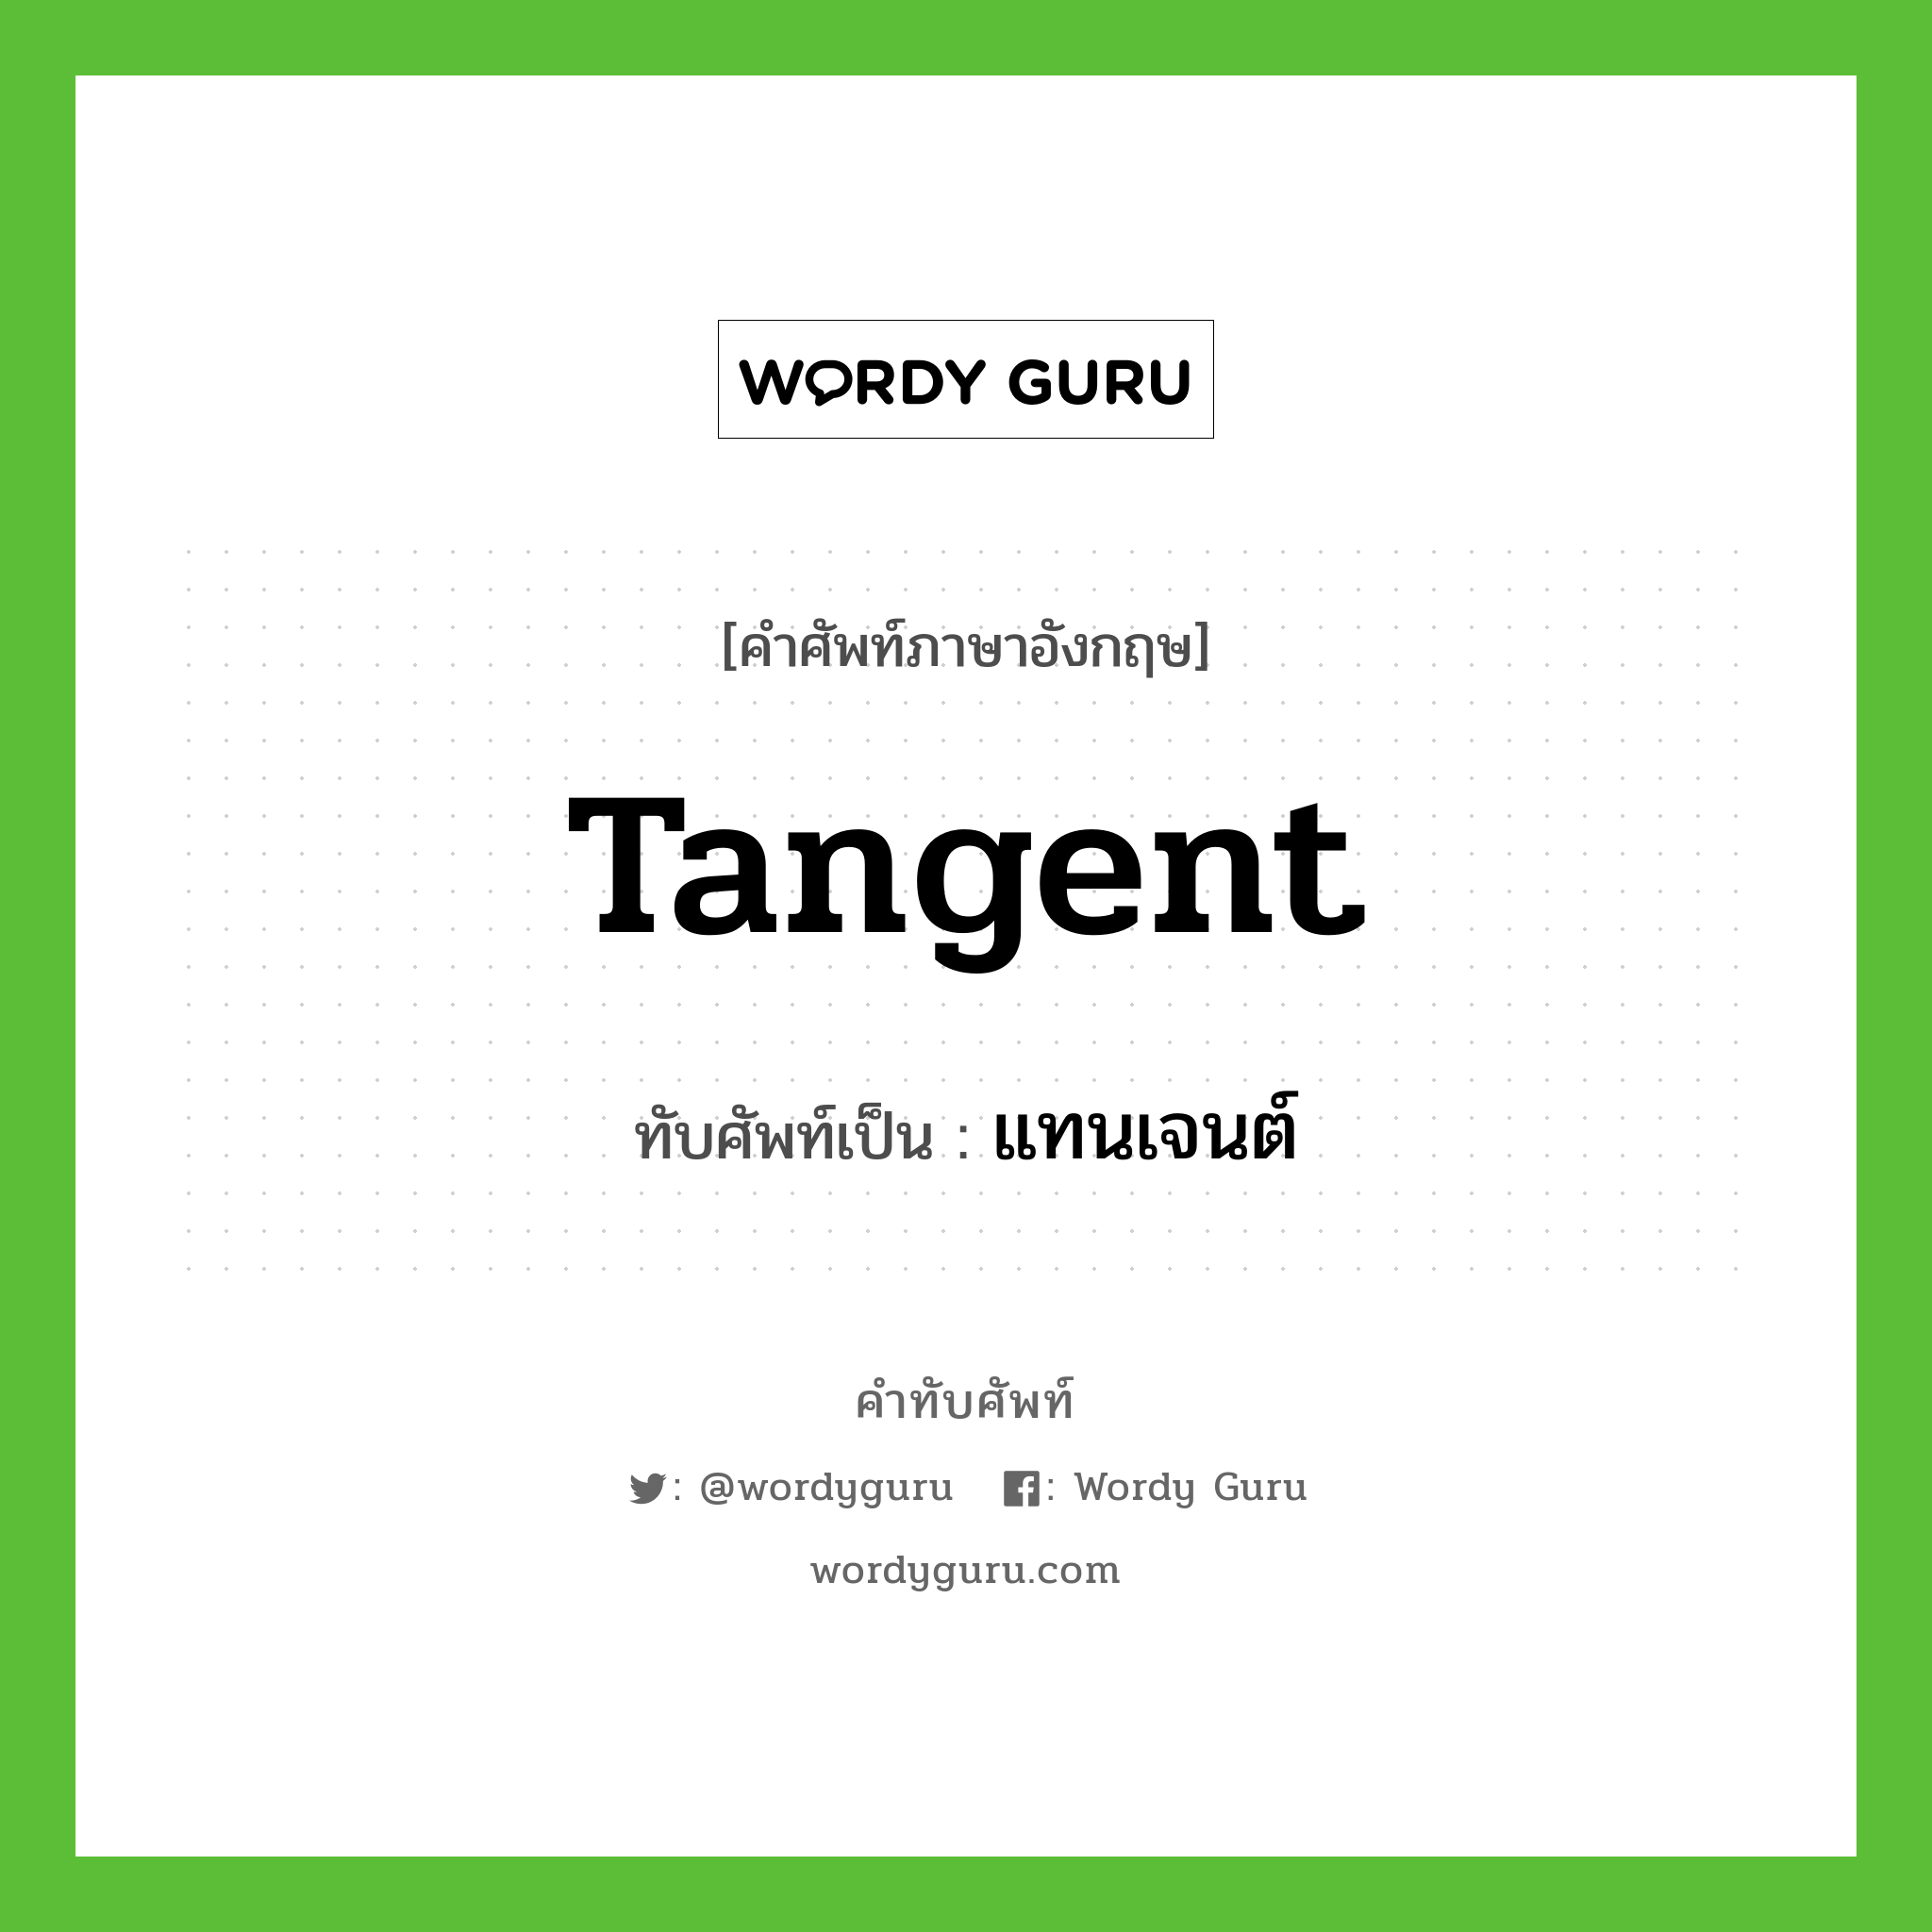 tangent เขียนเป็นคำไทยว่าอะไร?, คำศัพท์ภาษาอังกฤษ tangent ทับศัพท์เป็น แทนเจนต์